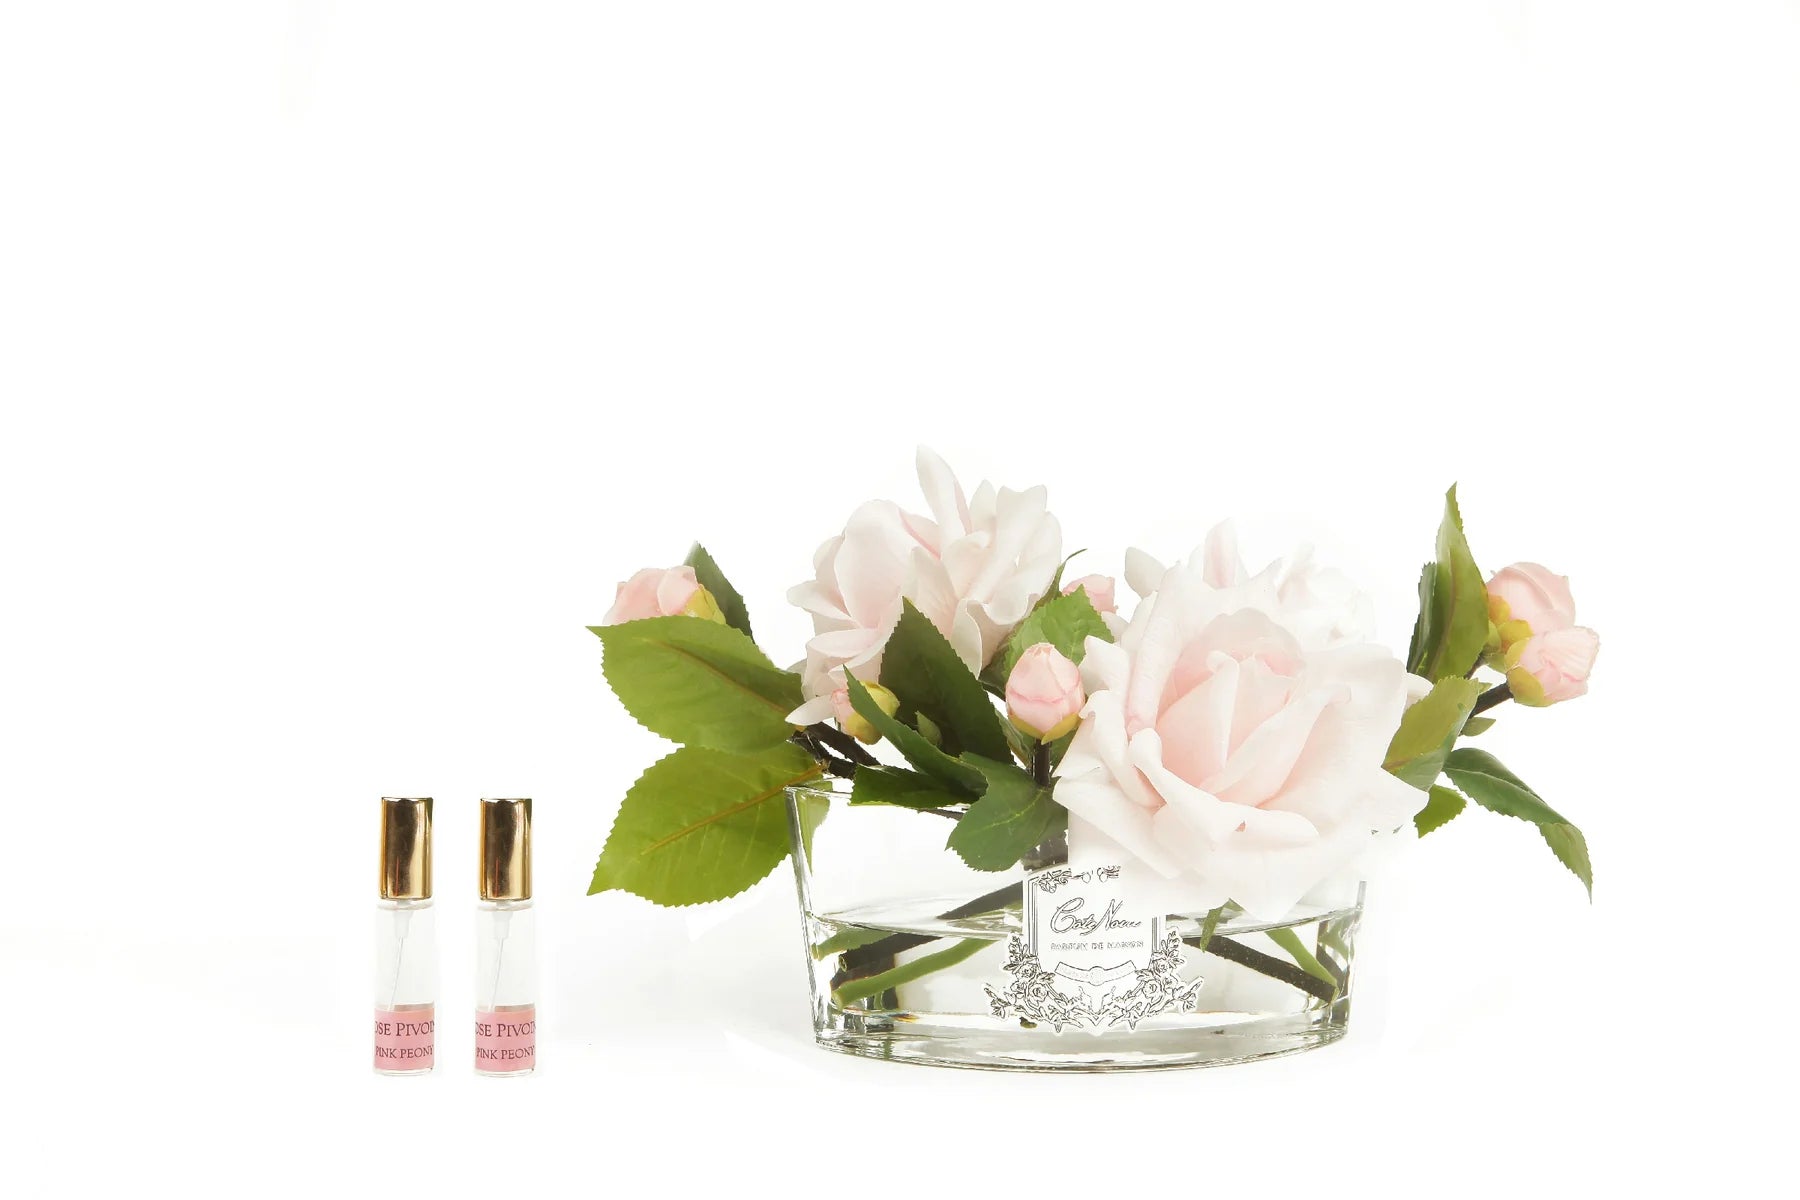 pinke rosen im ovalen glas mit silberner inschrift neben zwei pafrumsprays. weisser hintergrund.